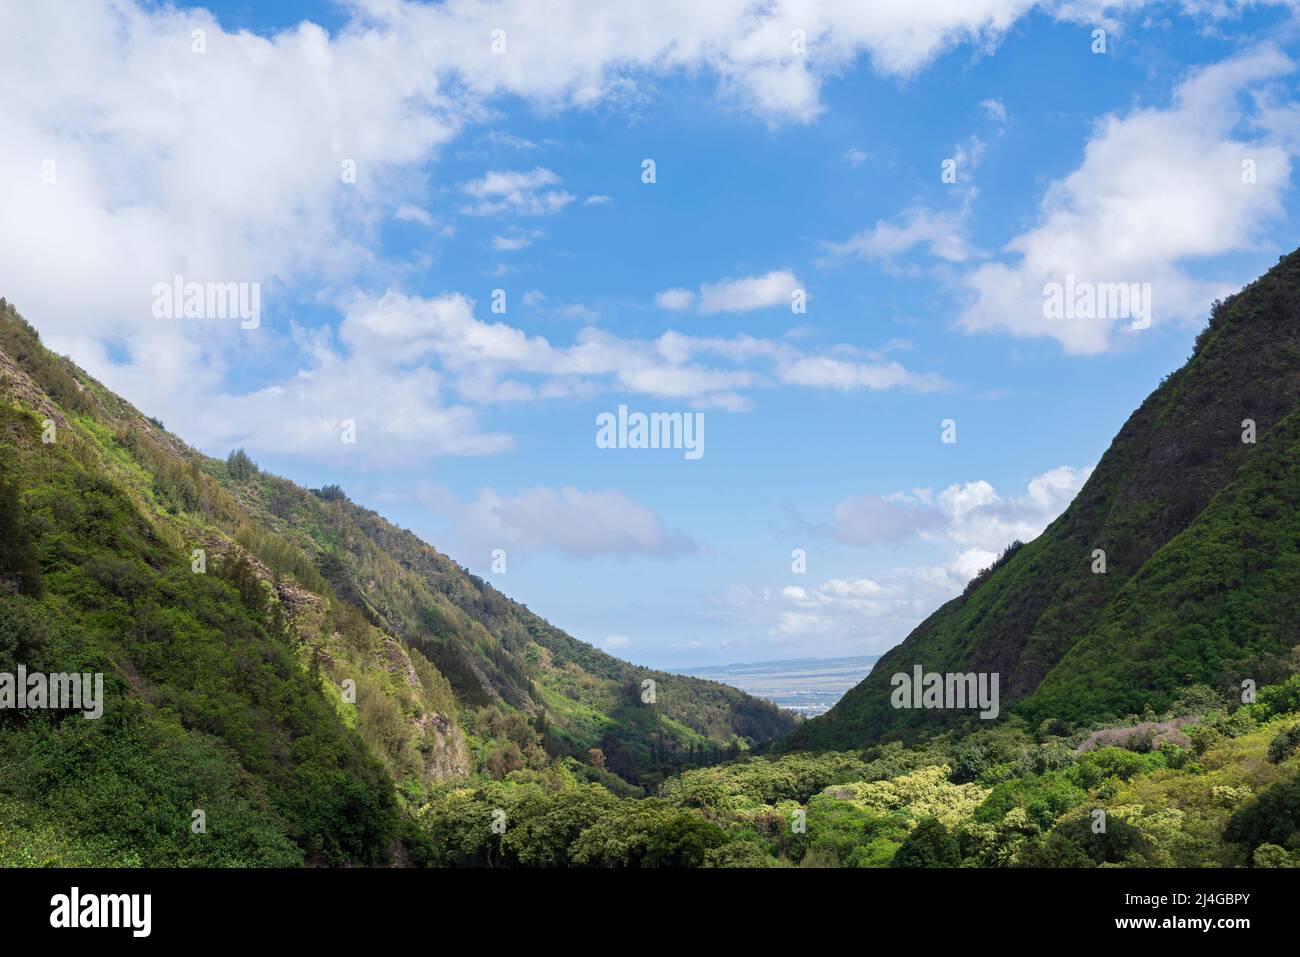 iao valley state park si affaccia sulla valle incorniciata da ripide montagne a maui hawaii Foto Stock